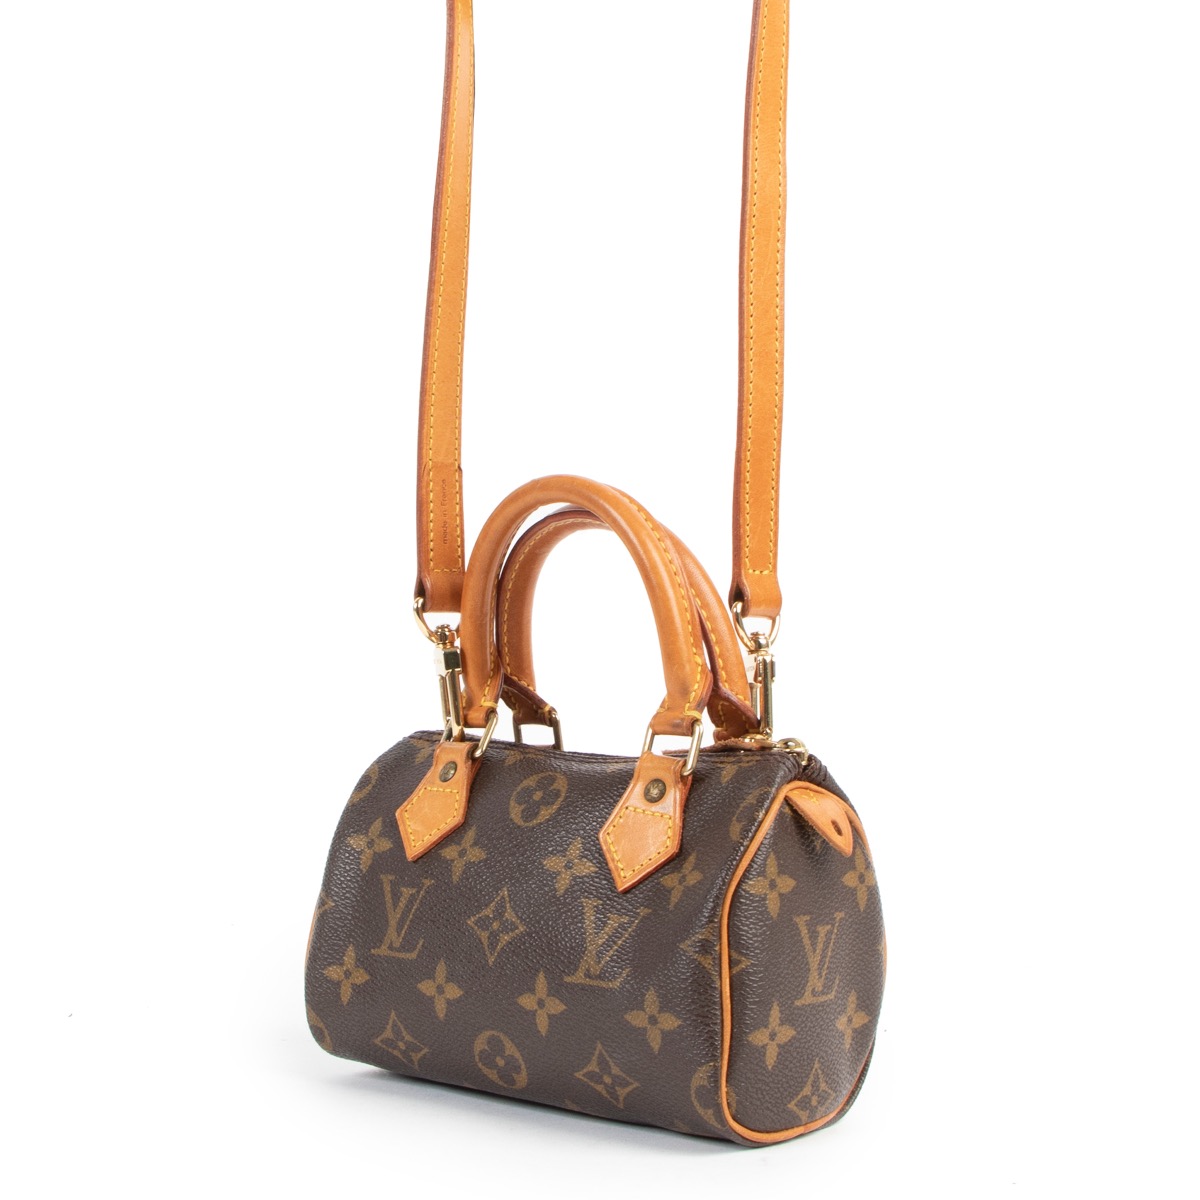 Nano speedy / mini hl leather mini bag Louis Vuitton Multicolour in Leather  - 34935868